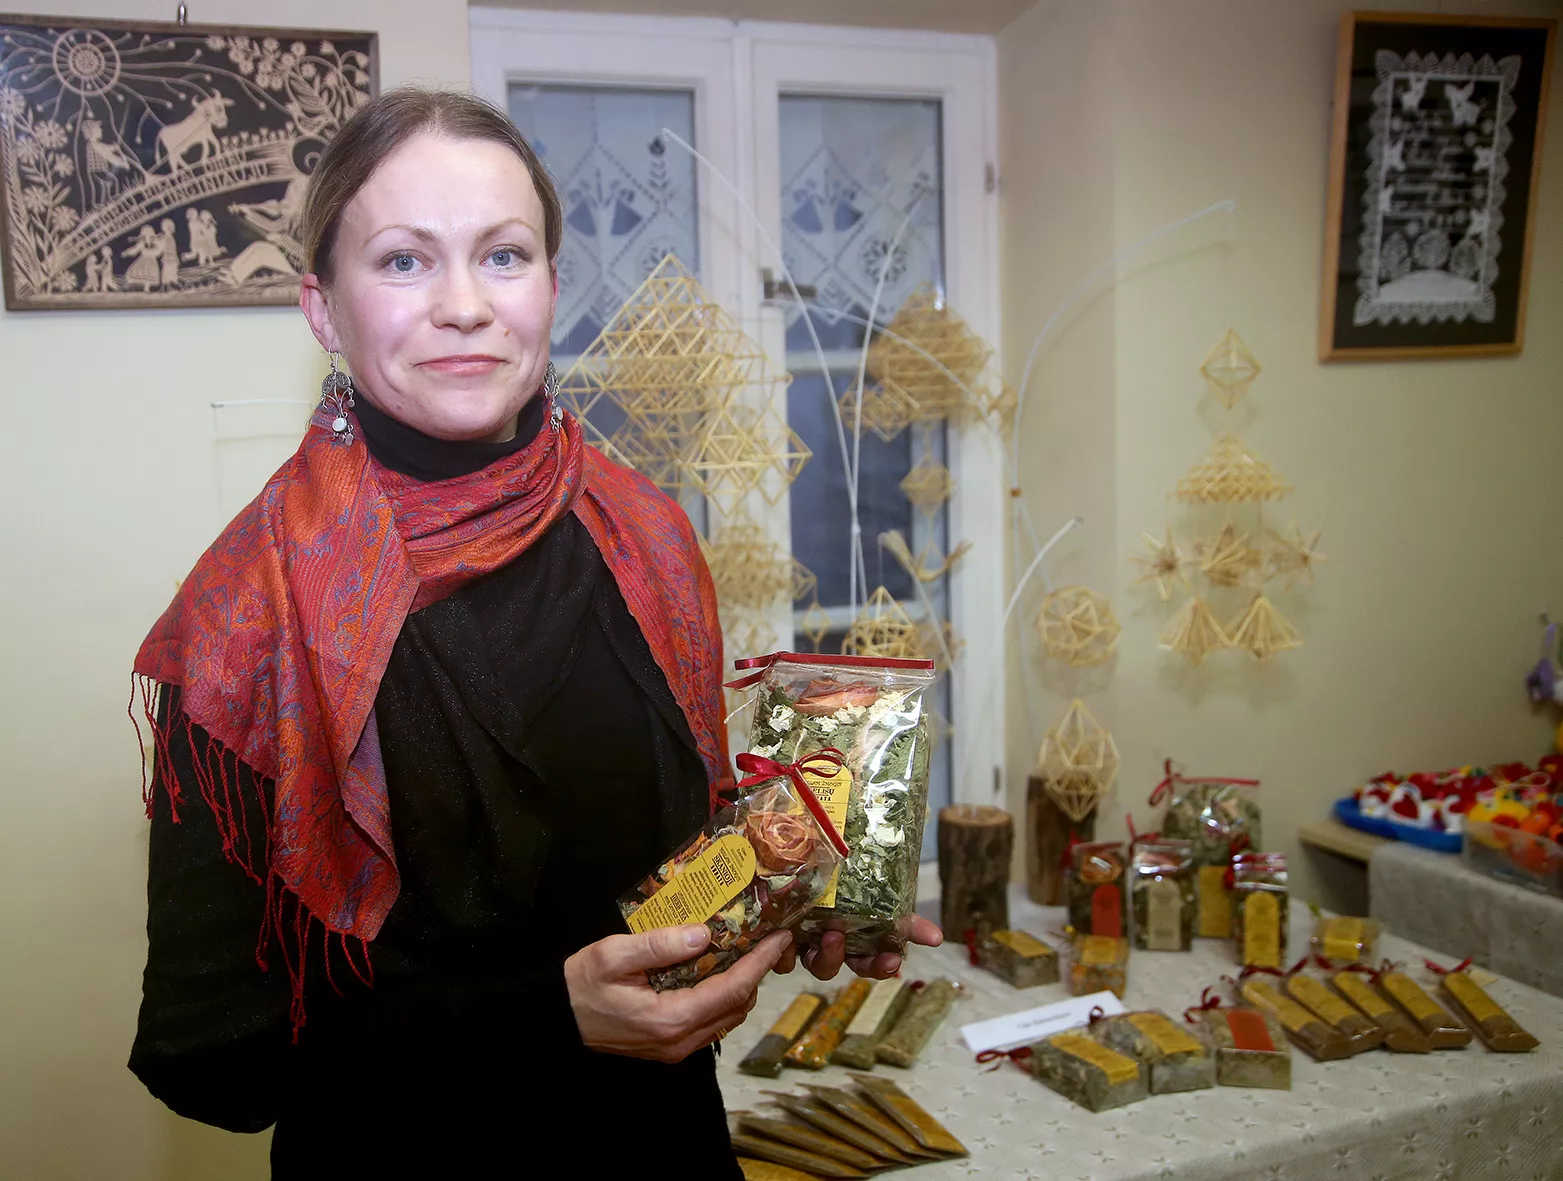 Šalia Miegėnų, Paberžėje, gyvenanti Vida Bukauskienė jau trylika metų užsiima suvenyrinių arbatų iš žolelių gamyba. / Algimanto Barzdžiaus nuotr. 